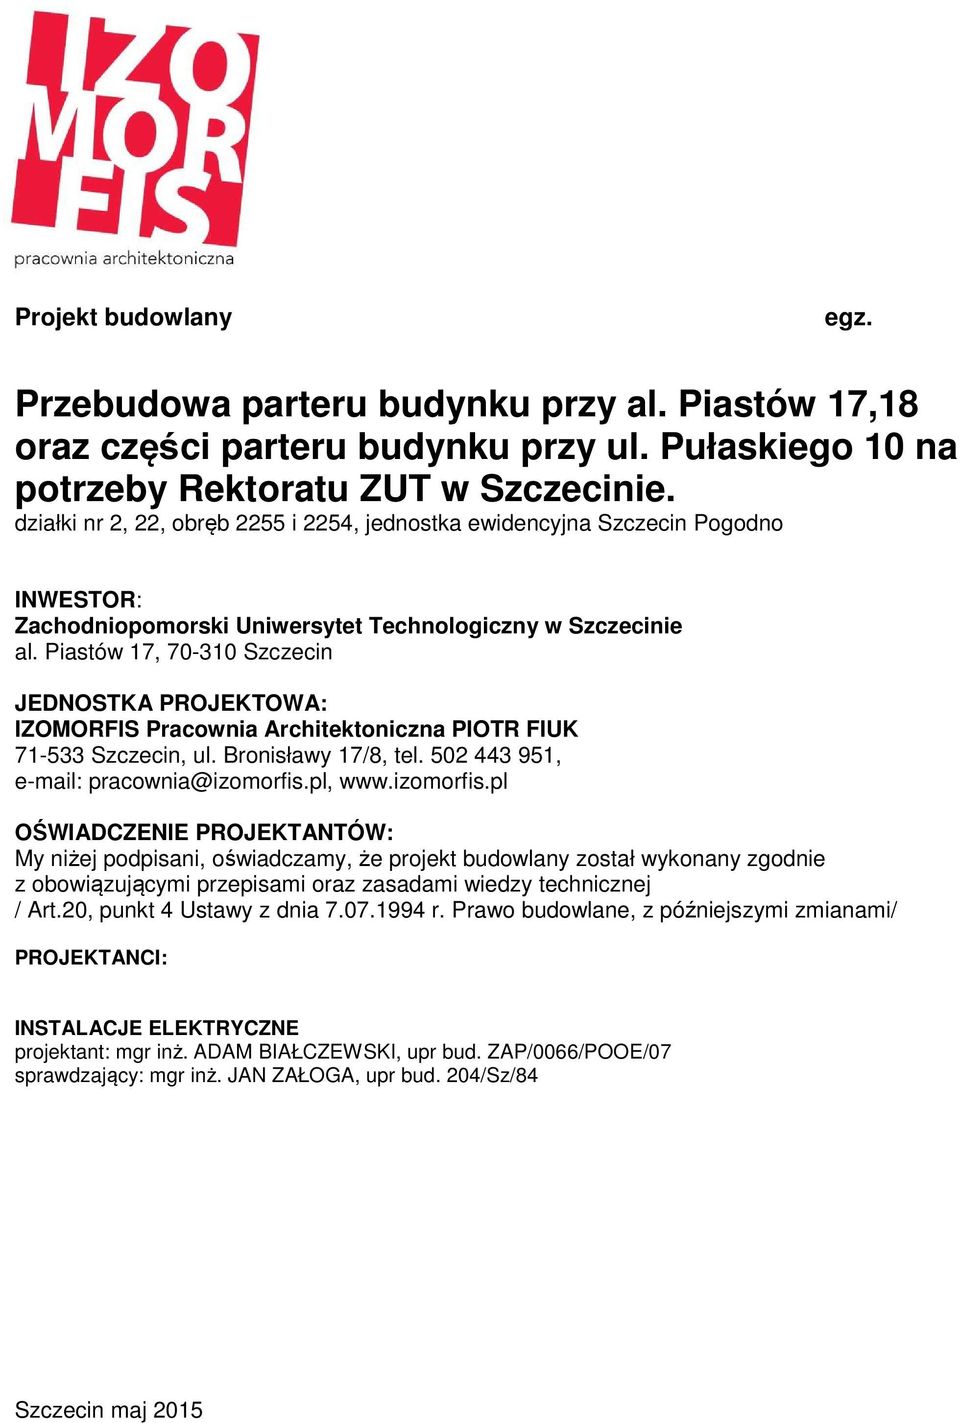 Piastów 17, 70-310 Szczecin JEDNOSTKA PROJEKTOWA: IZOMORFIS Pracownia Architektoniczna PIOTR FIUK 71-533 Szczecin, ul. Bronisławy 17/8, tel. 502 443 951, e-mail: pracownia@izomorfis.